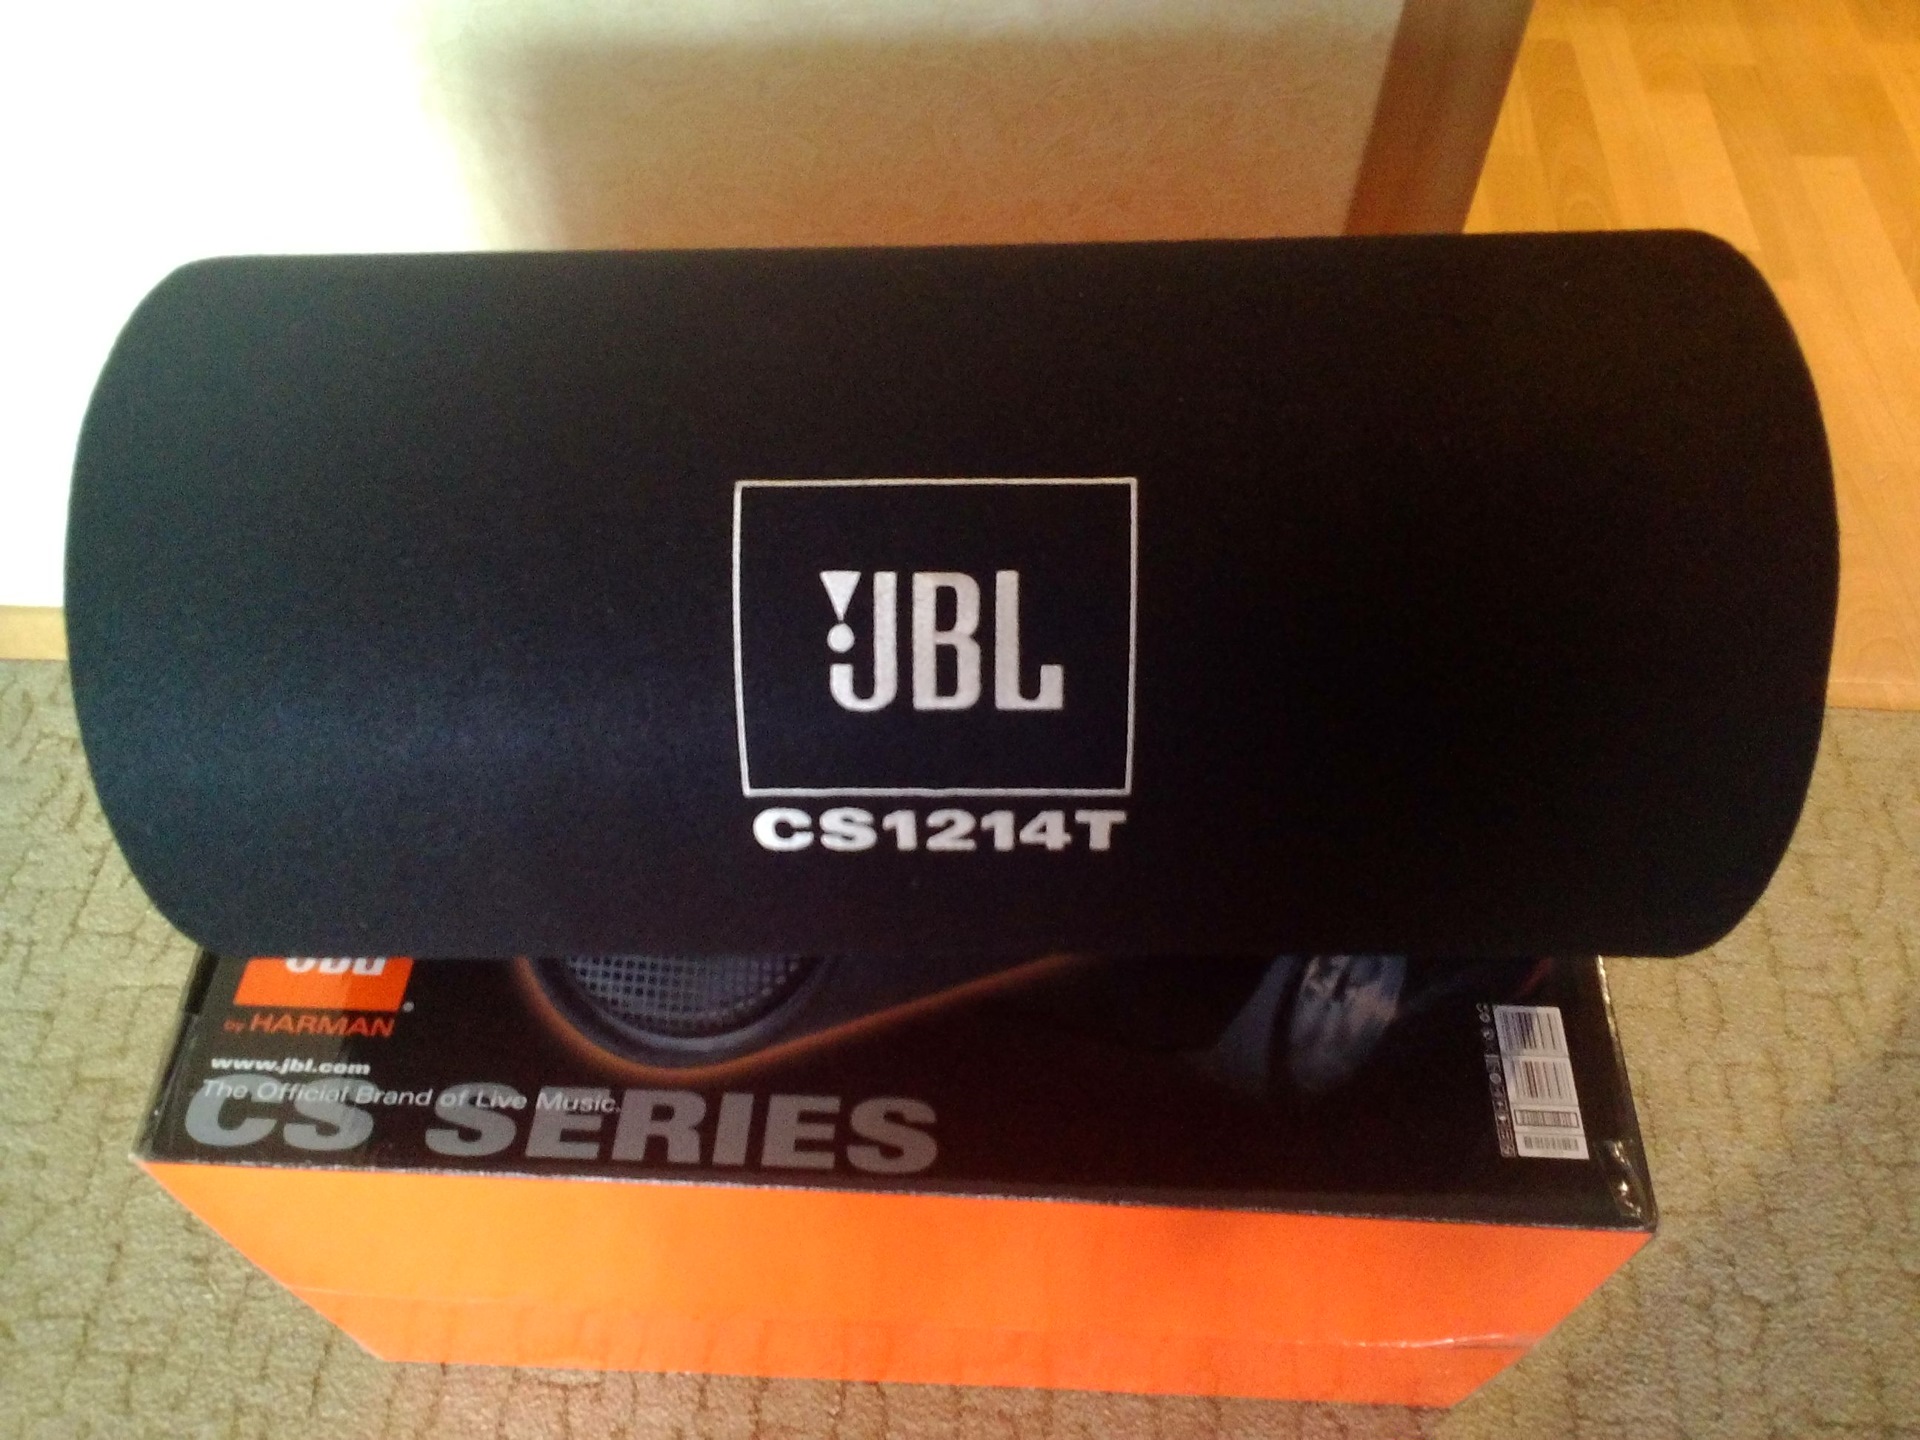 Jbl cs1214t. JBL CS 69. JBL cs1214t короб. JBL CS-1014. Короб жбл.